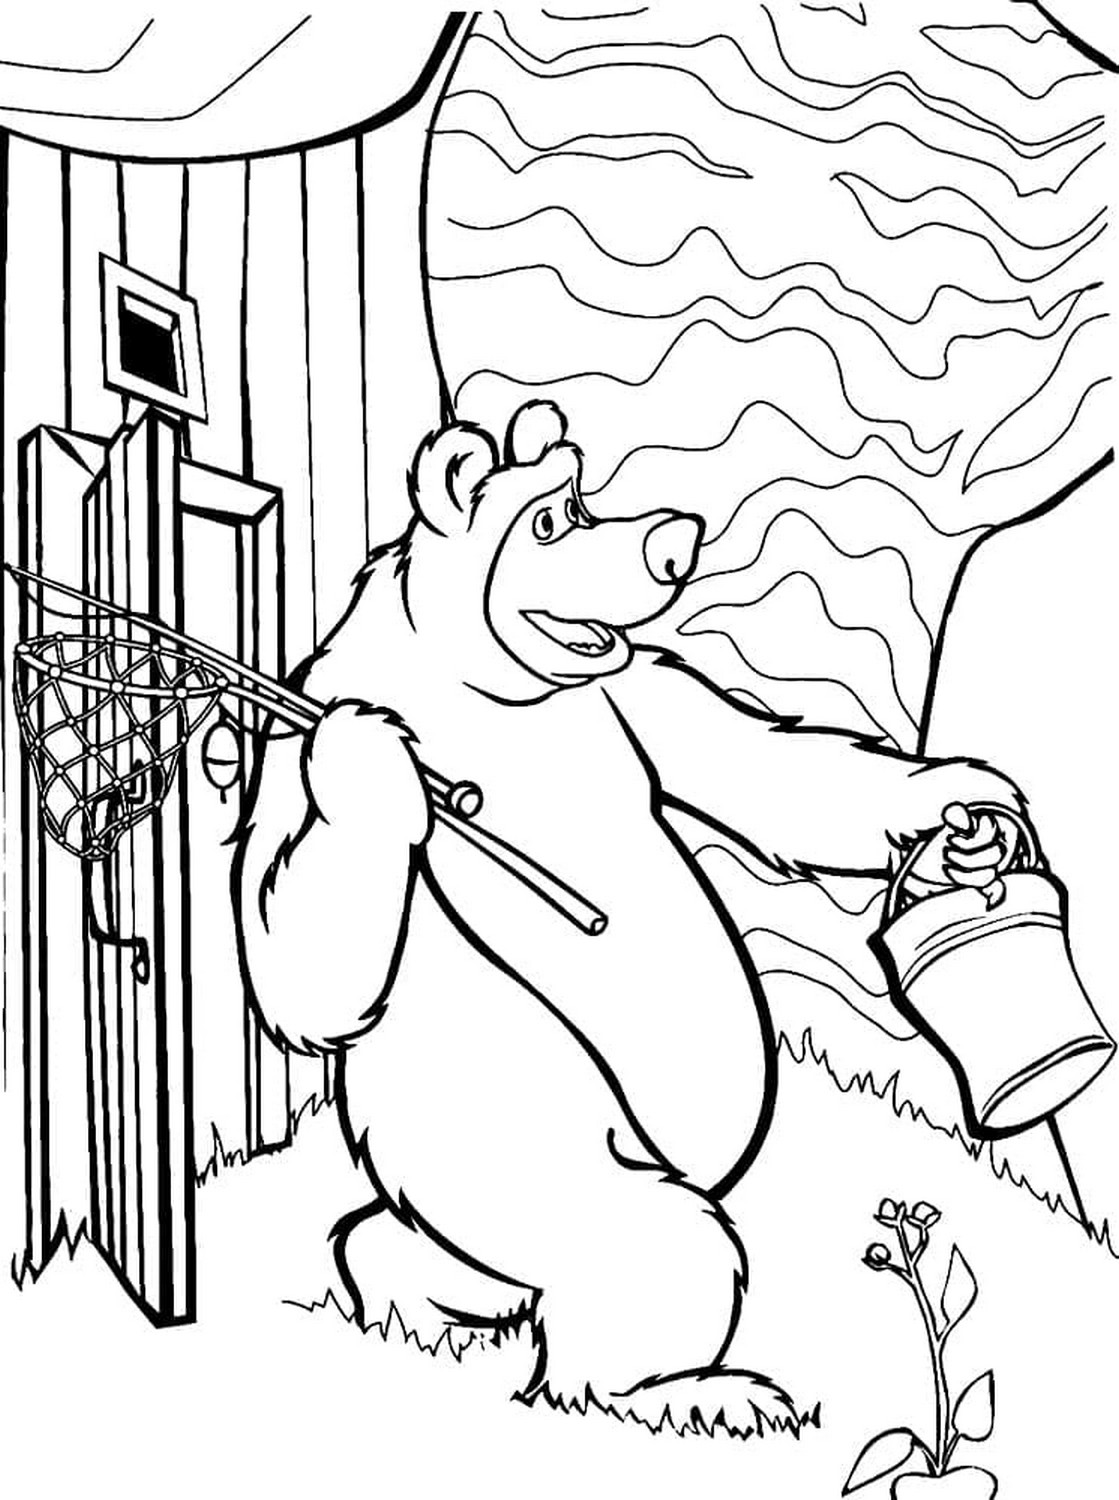 Dibujo 84 de Masha y el oso para imprimir y colorear